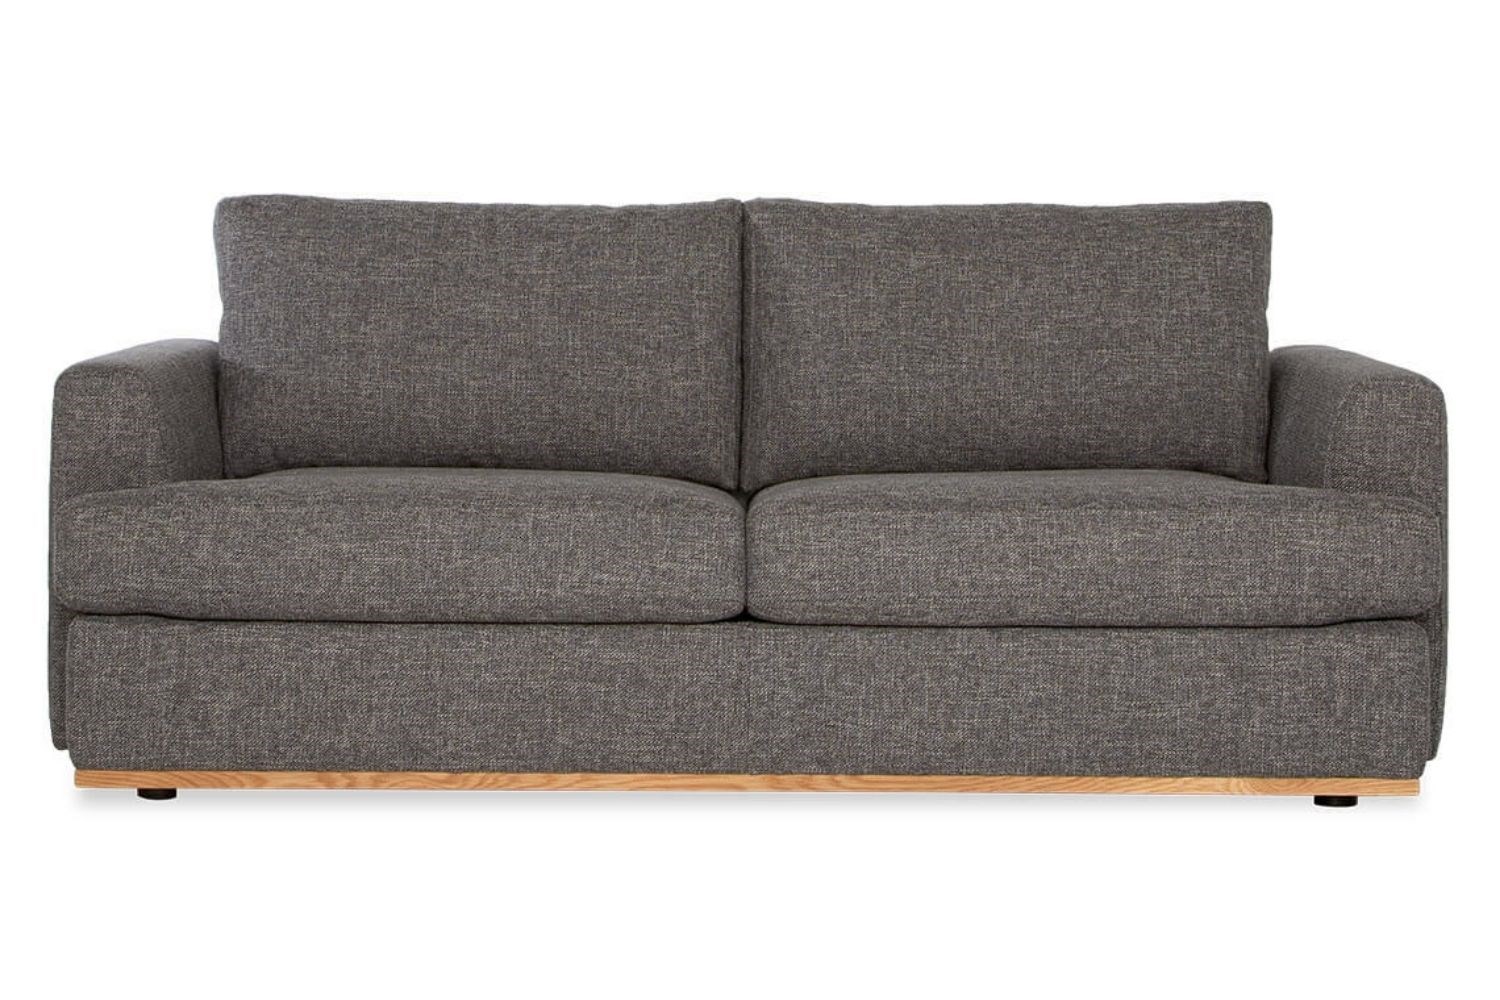 air sofa bed australia